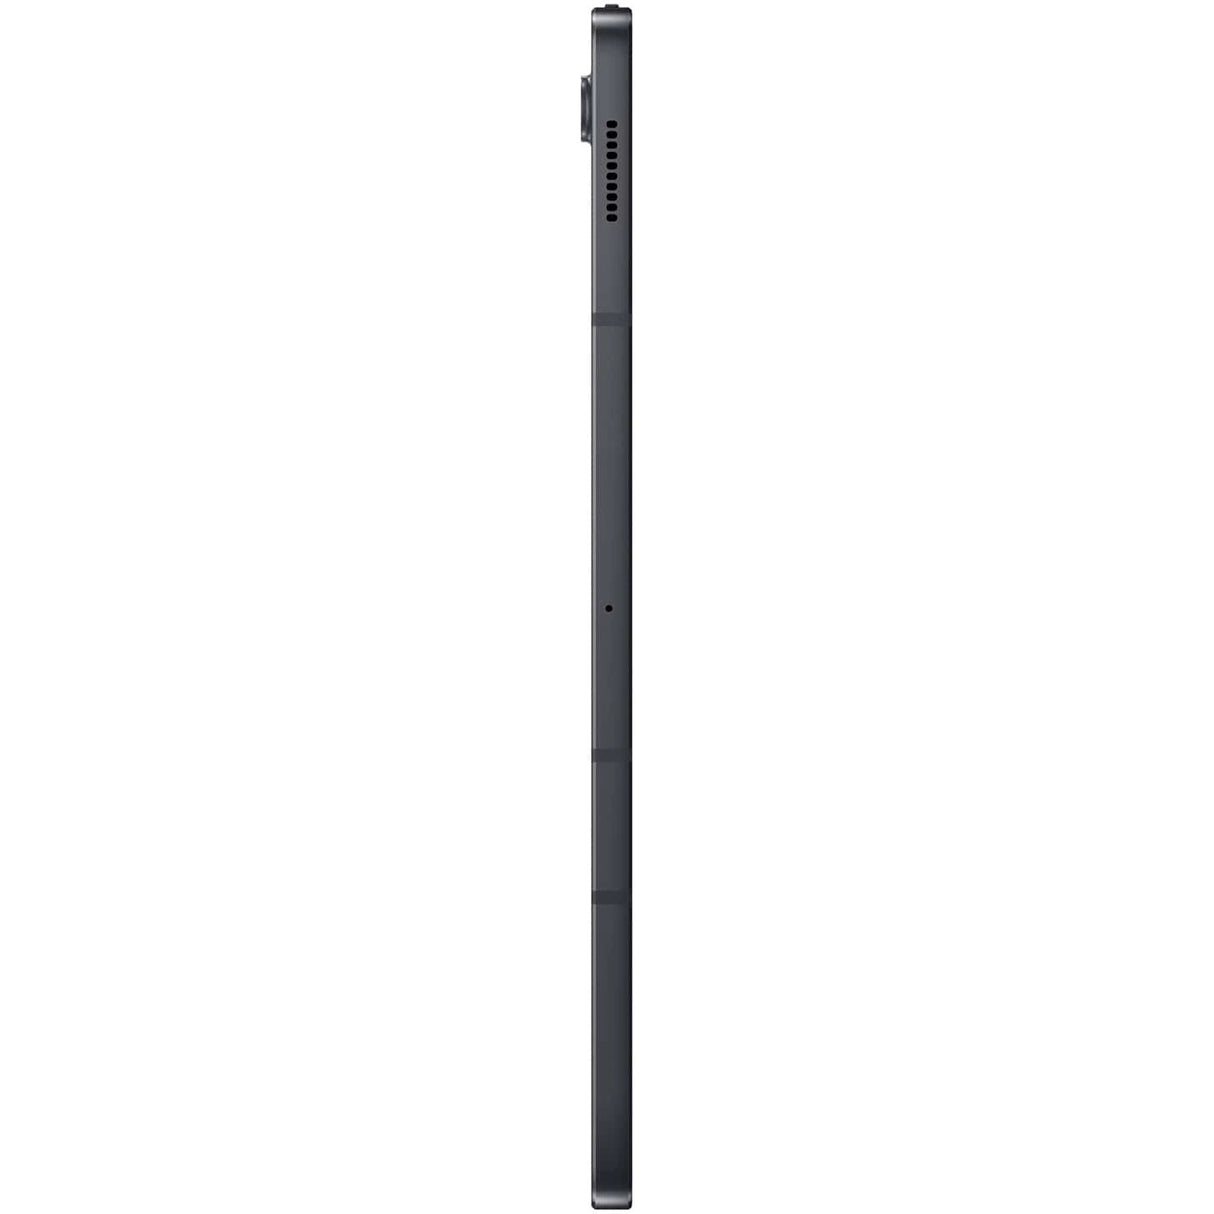 Samsung Galaxy Tab S7 FE T733, Octa-Core, 12.4", 6GB RAM, 128GB, Wi-Fi, Mystic Black (fekete)